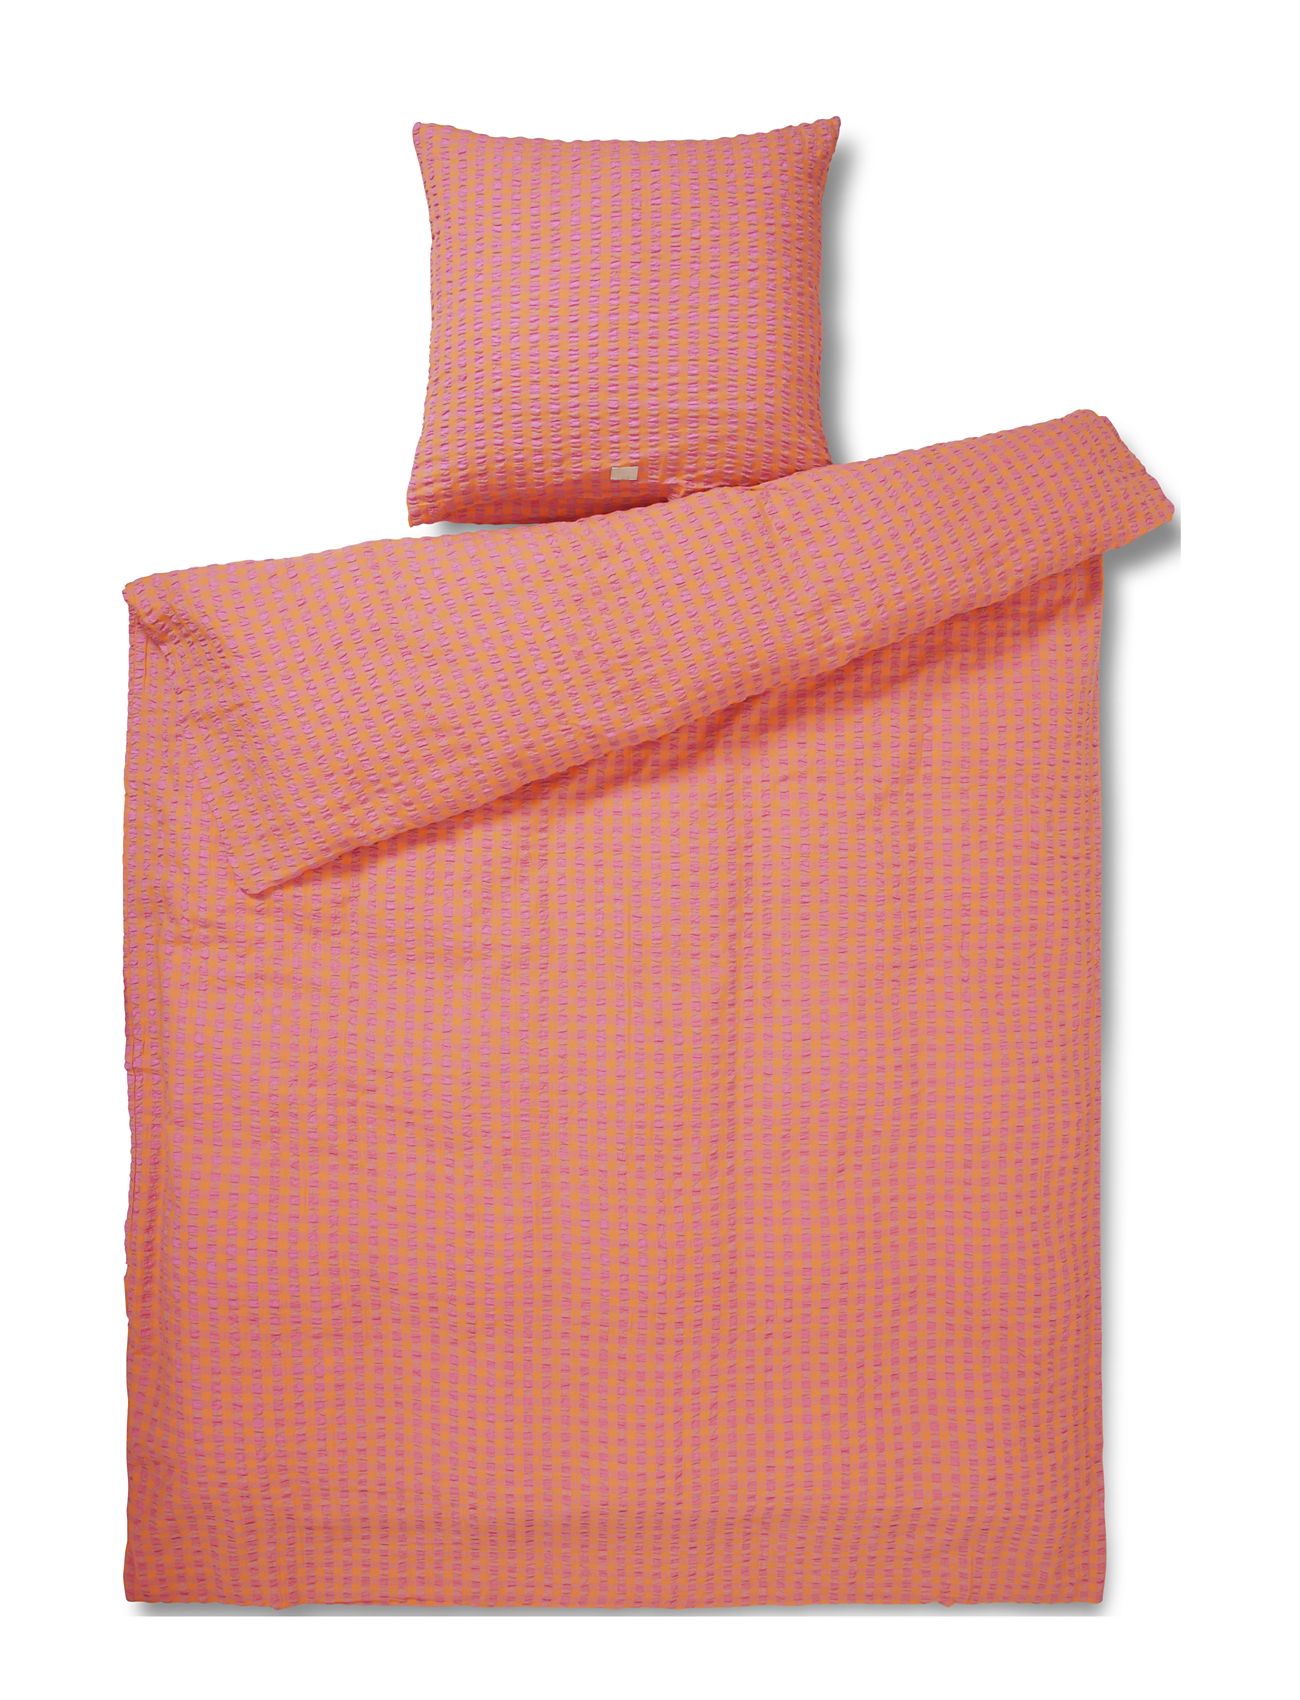 Bæk&Bølge Sengetøj 140X220 Cm Pink/Orange Dk Home Textiles Bedtextiles Bed Sets Coral Juna